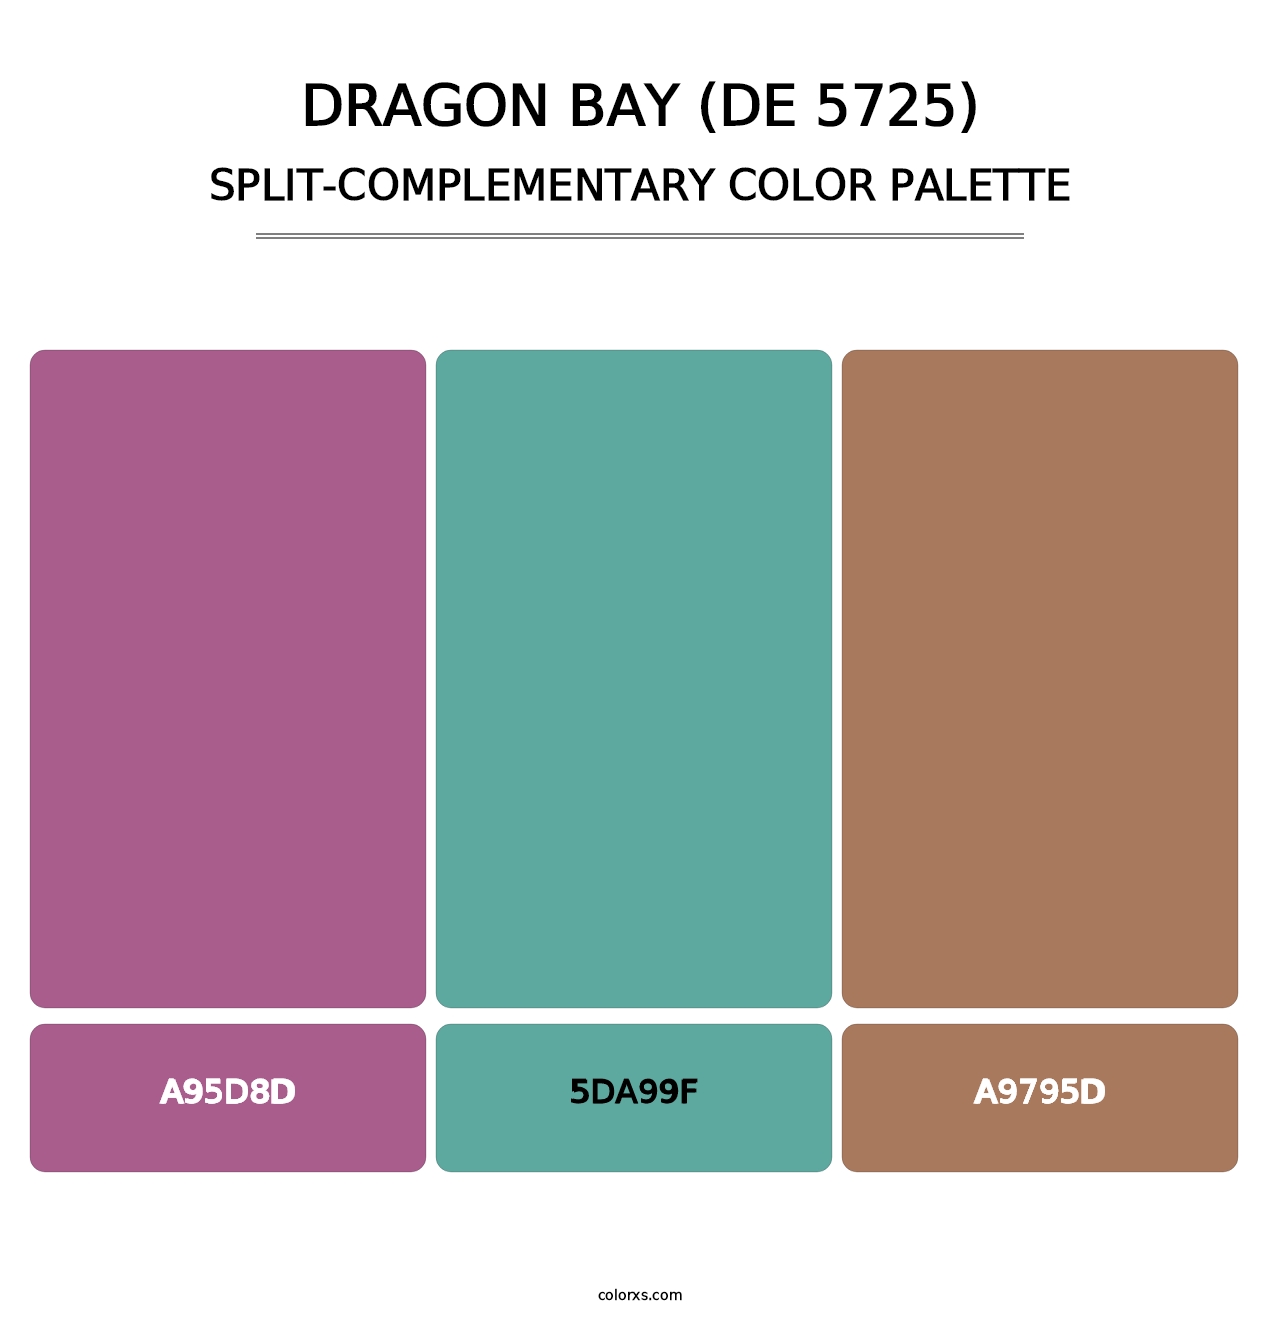 Dragon Bay (DE 5725) - Split-Complementary Color Palette